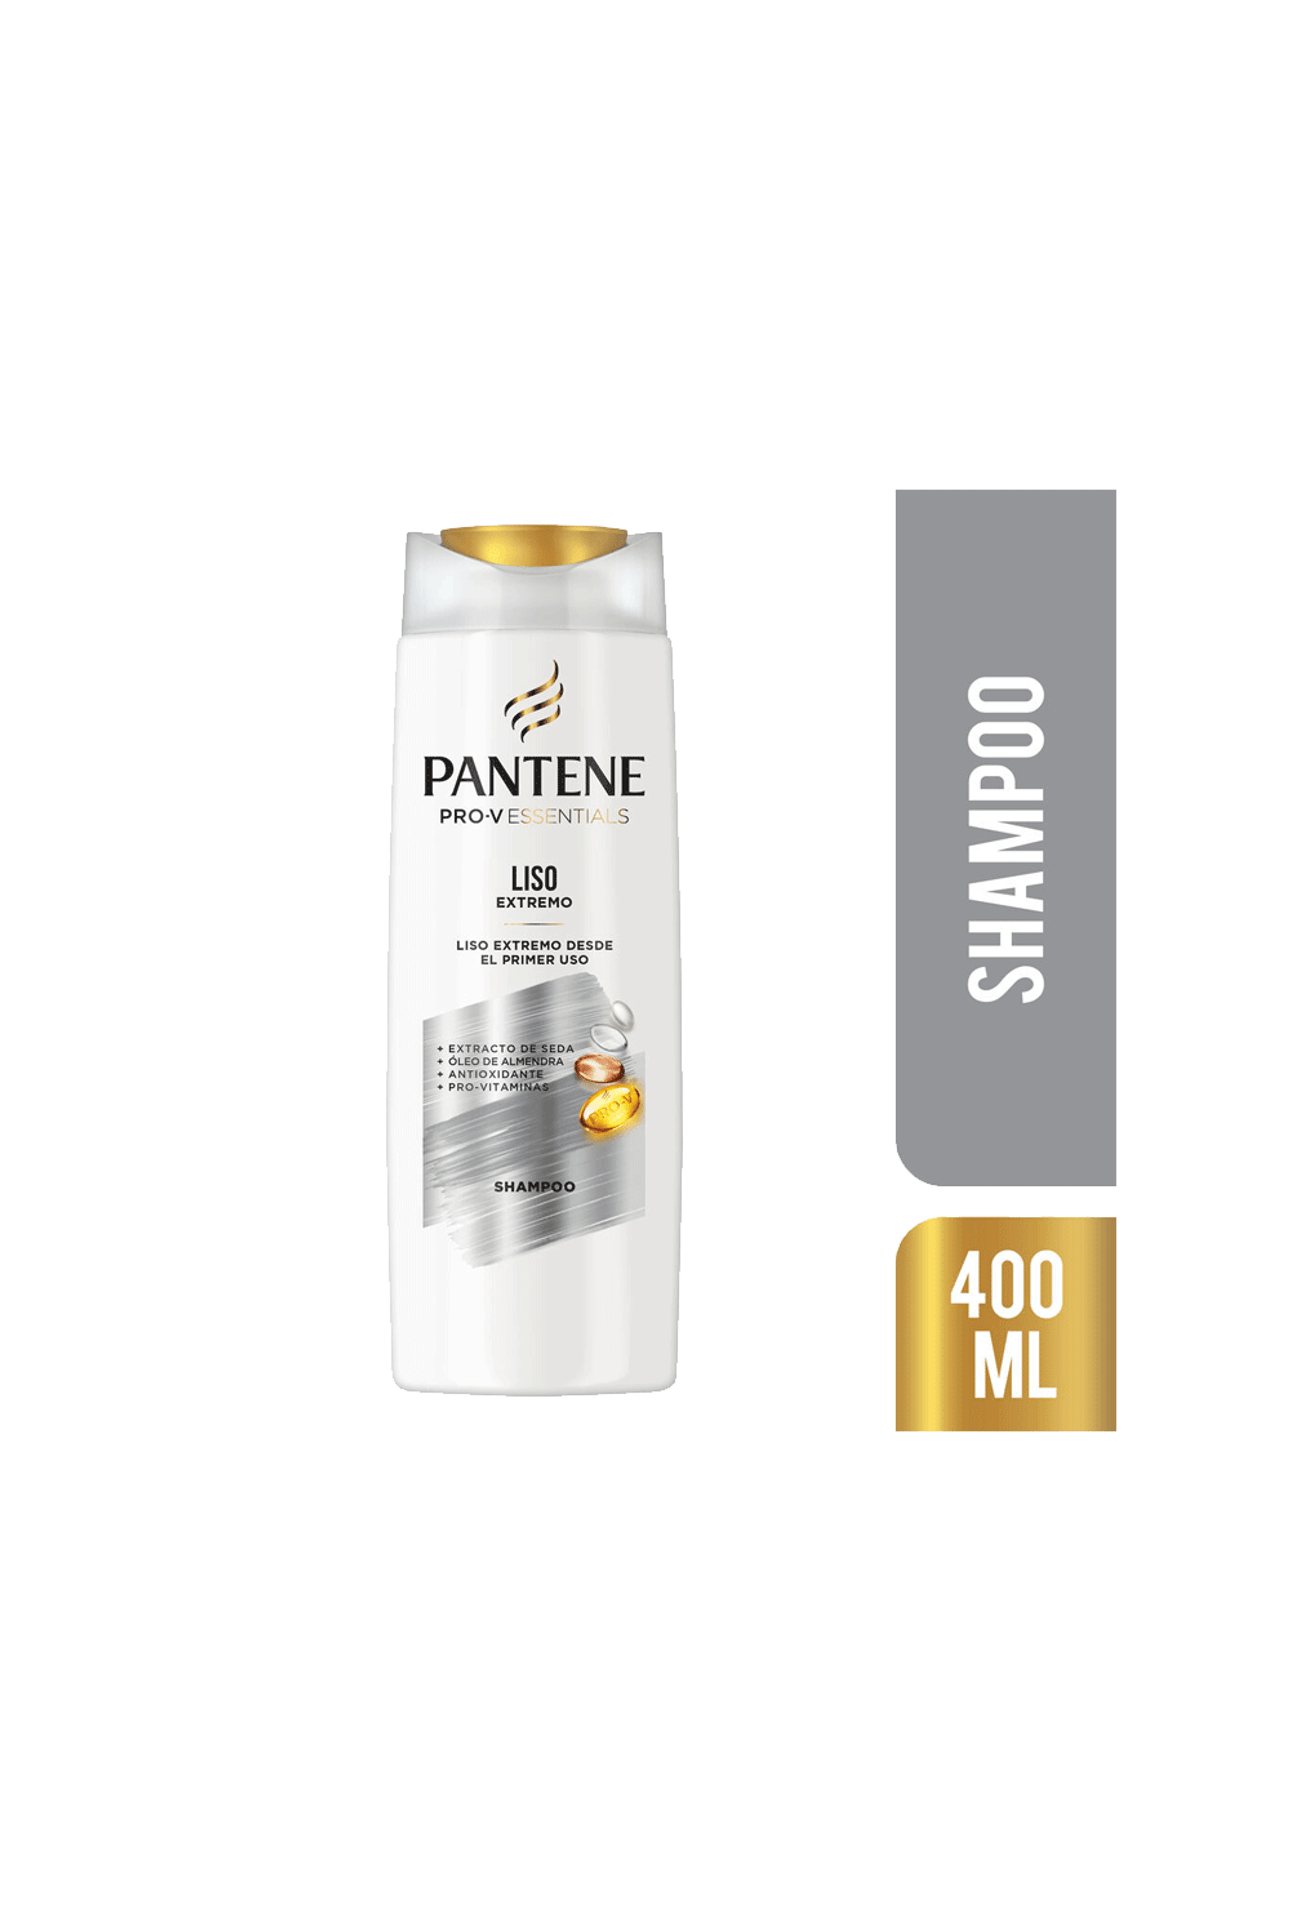 Pantene-Shampoo-Liso-Extremo-x-400-ml-7500435168540_img1